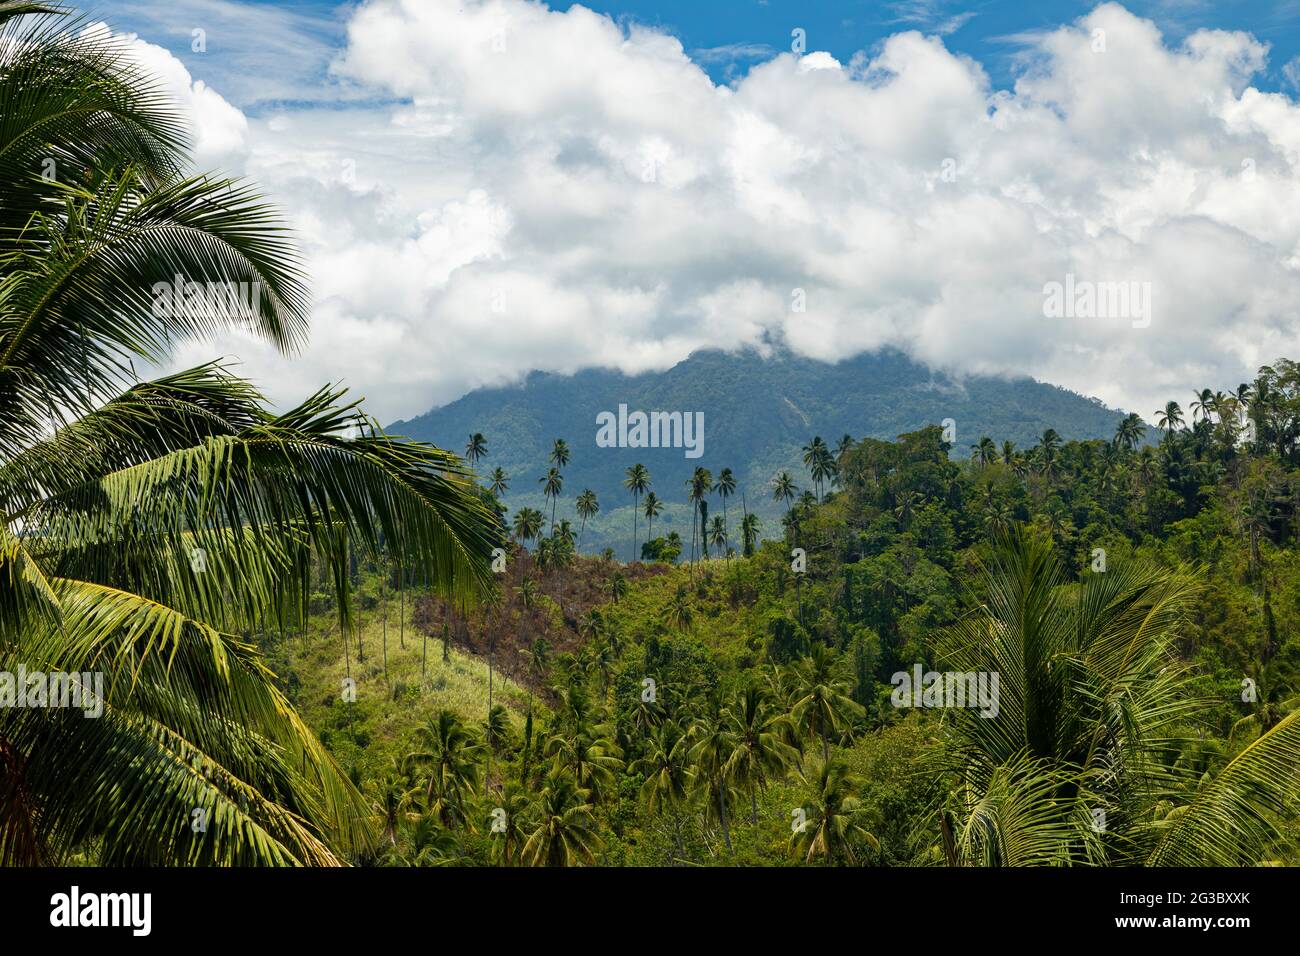 Klabat Vulkan, versteckt von Wolken, im Hintergrund einer tropischen Landschaft aus Palmen und grünen Bäumen, North Minahasa, Sulawesi, Indonesien Stockfoto